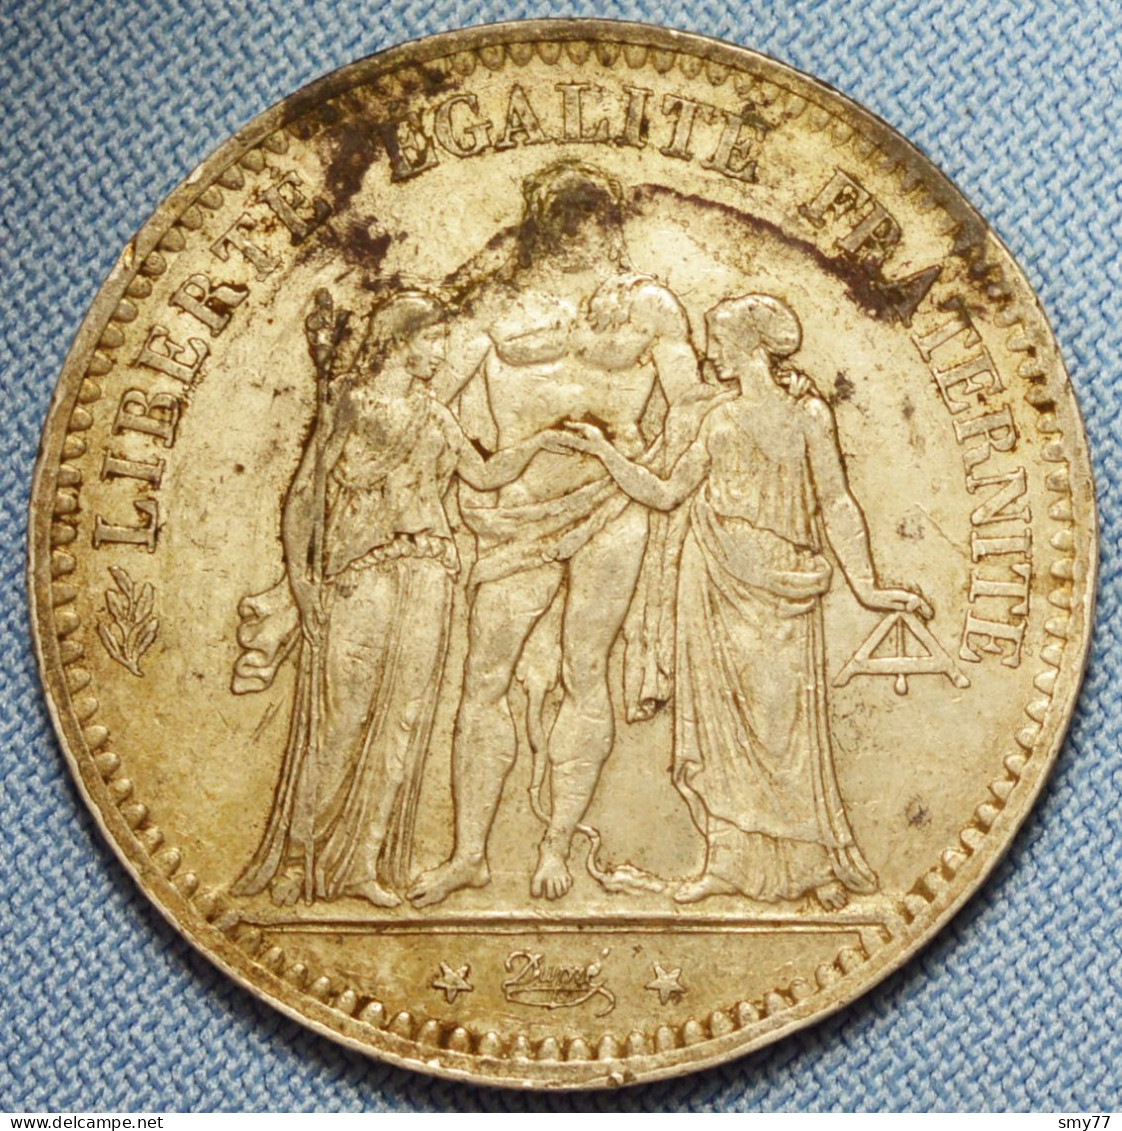 France • 5 Francs • 1876 A   (Paris) • Hercule IIIe République • [24-354] - 5 Francs